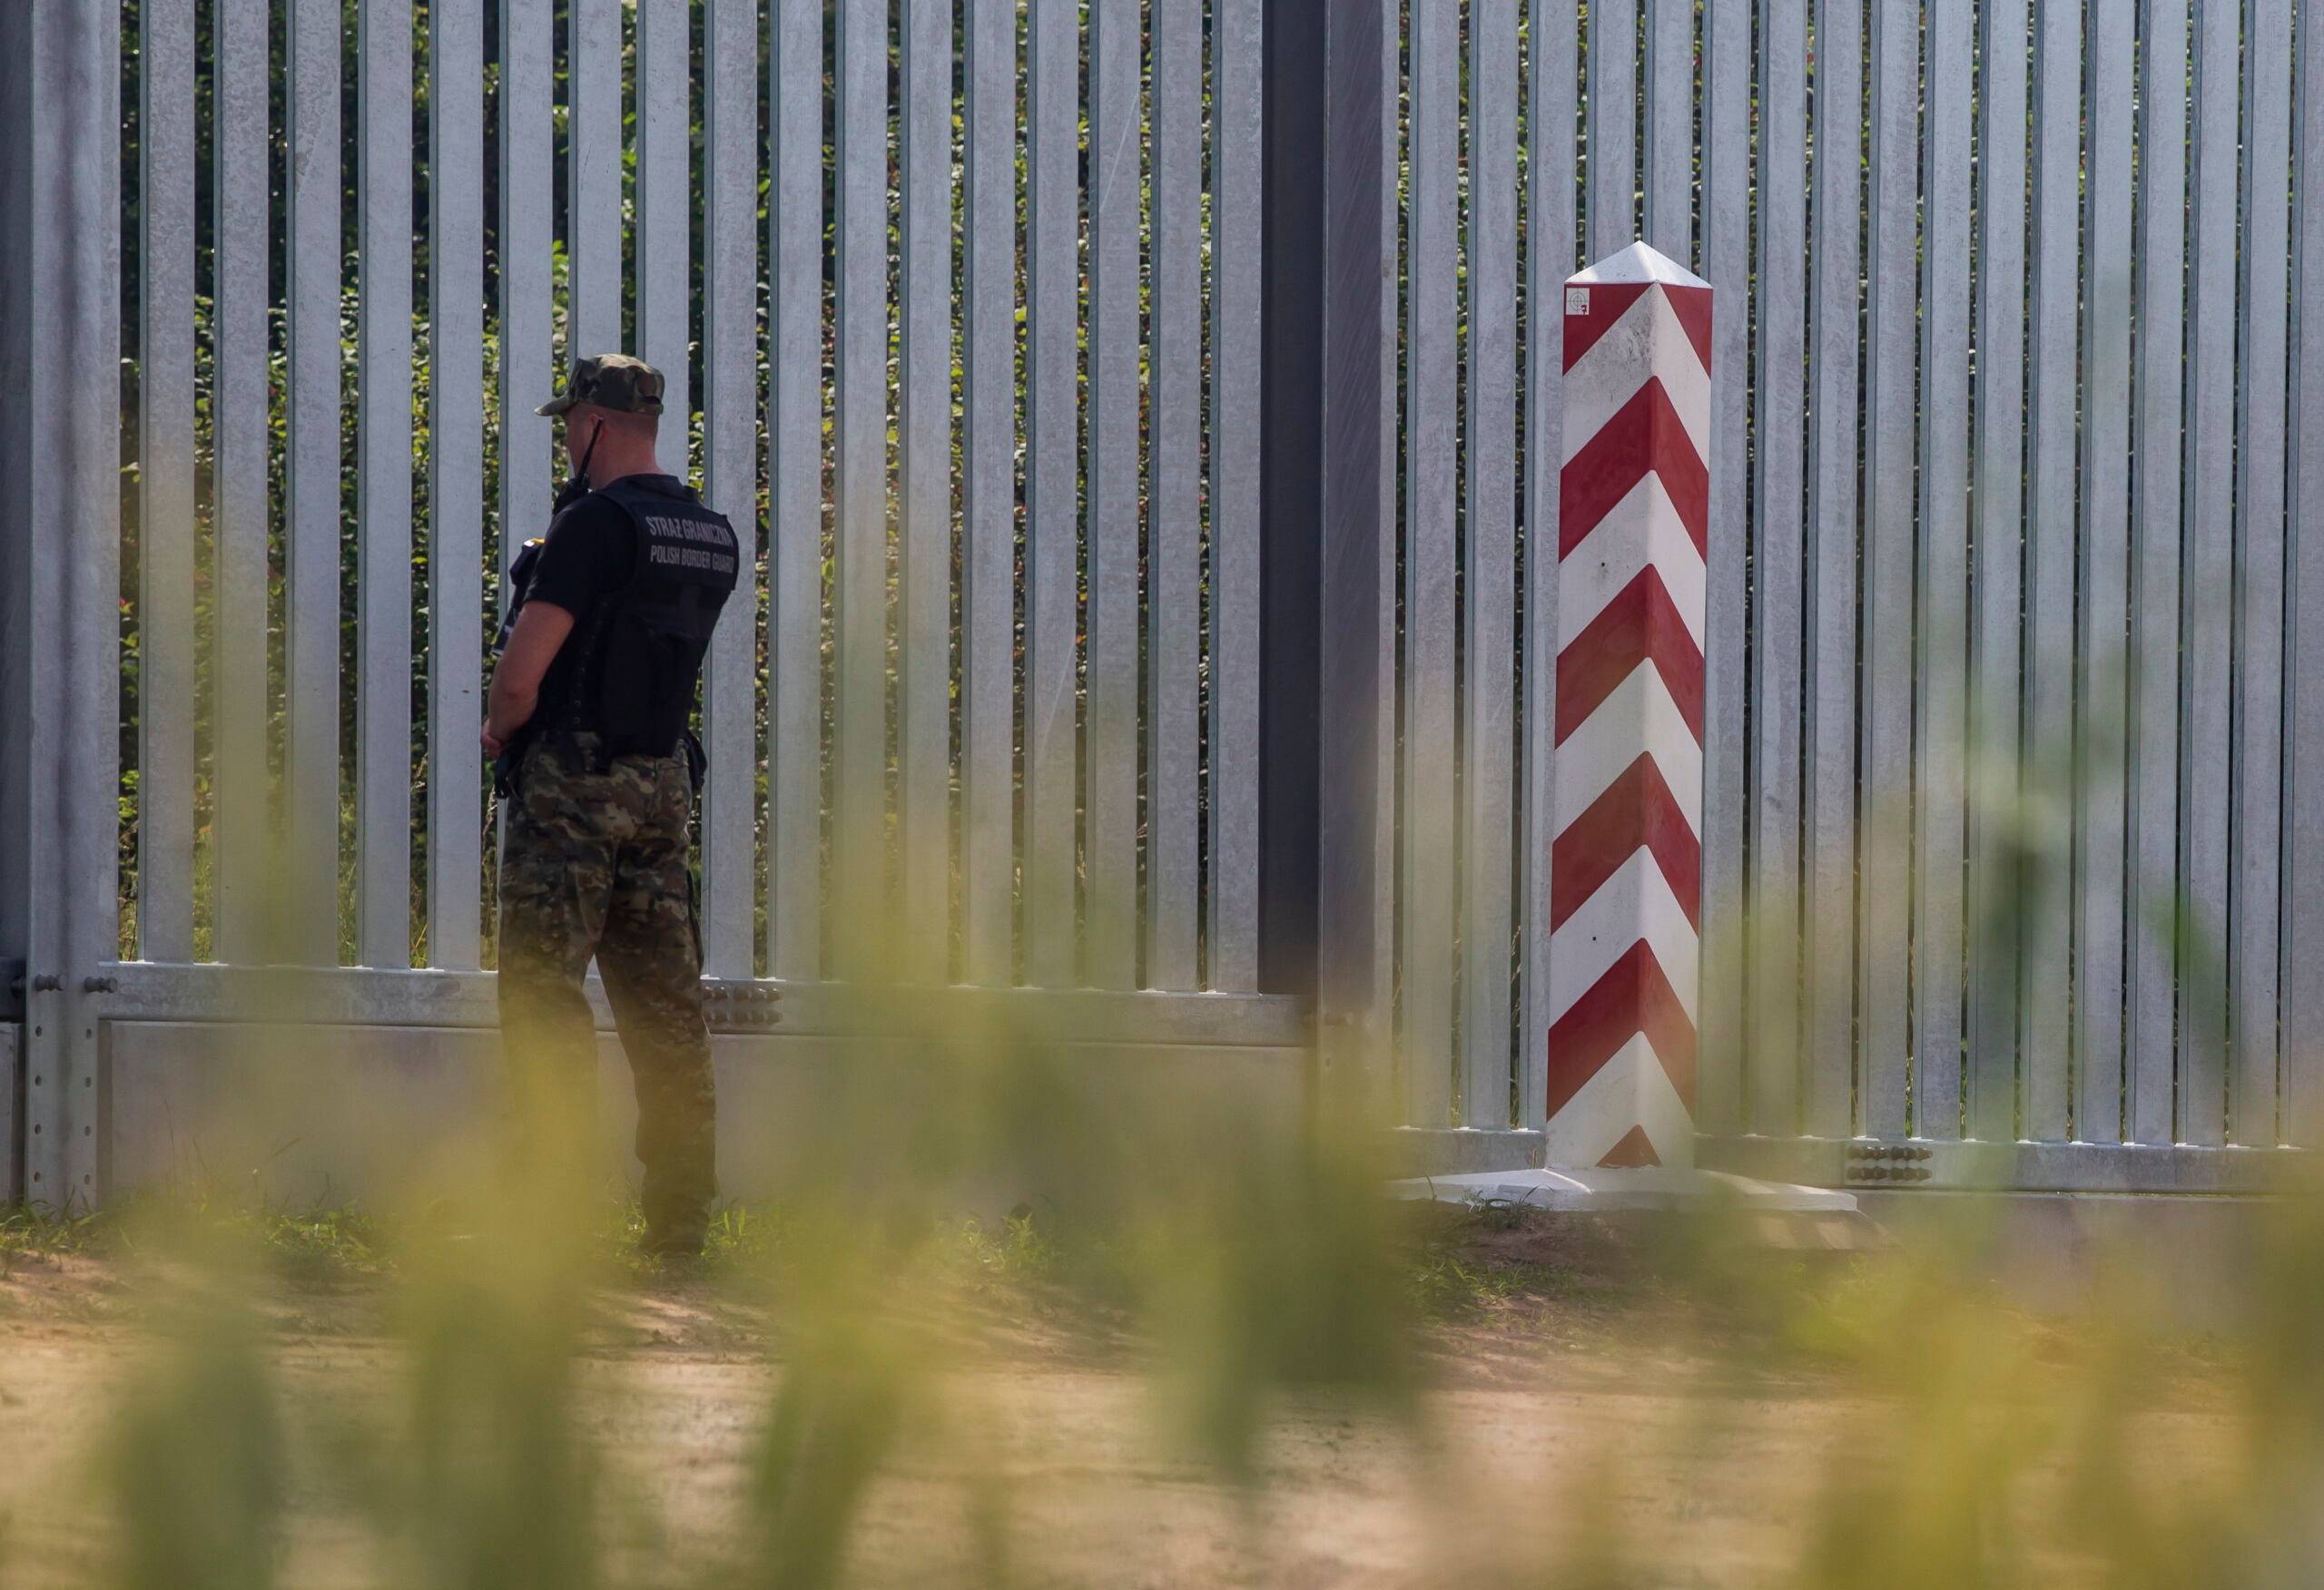 Mur graniczny, polski słup graniczny i funkcjonariusz polskiej straży granicznej